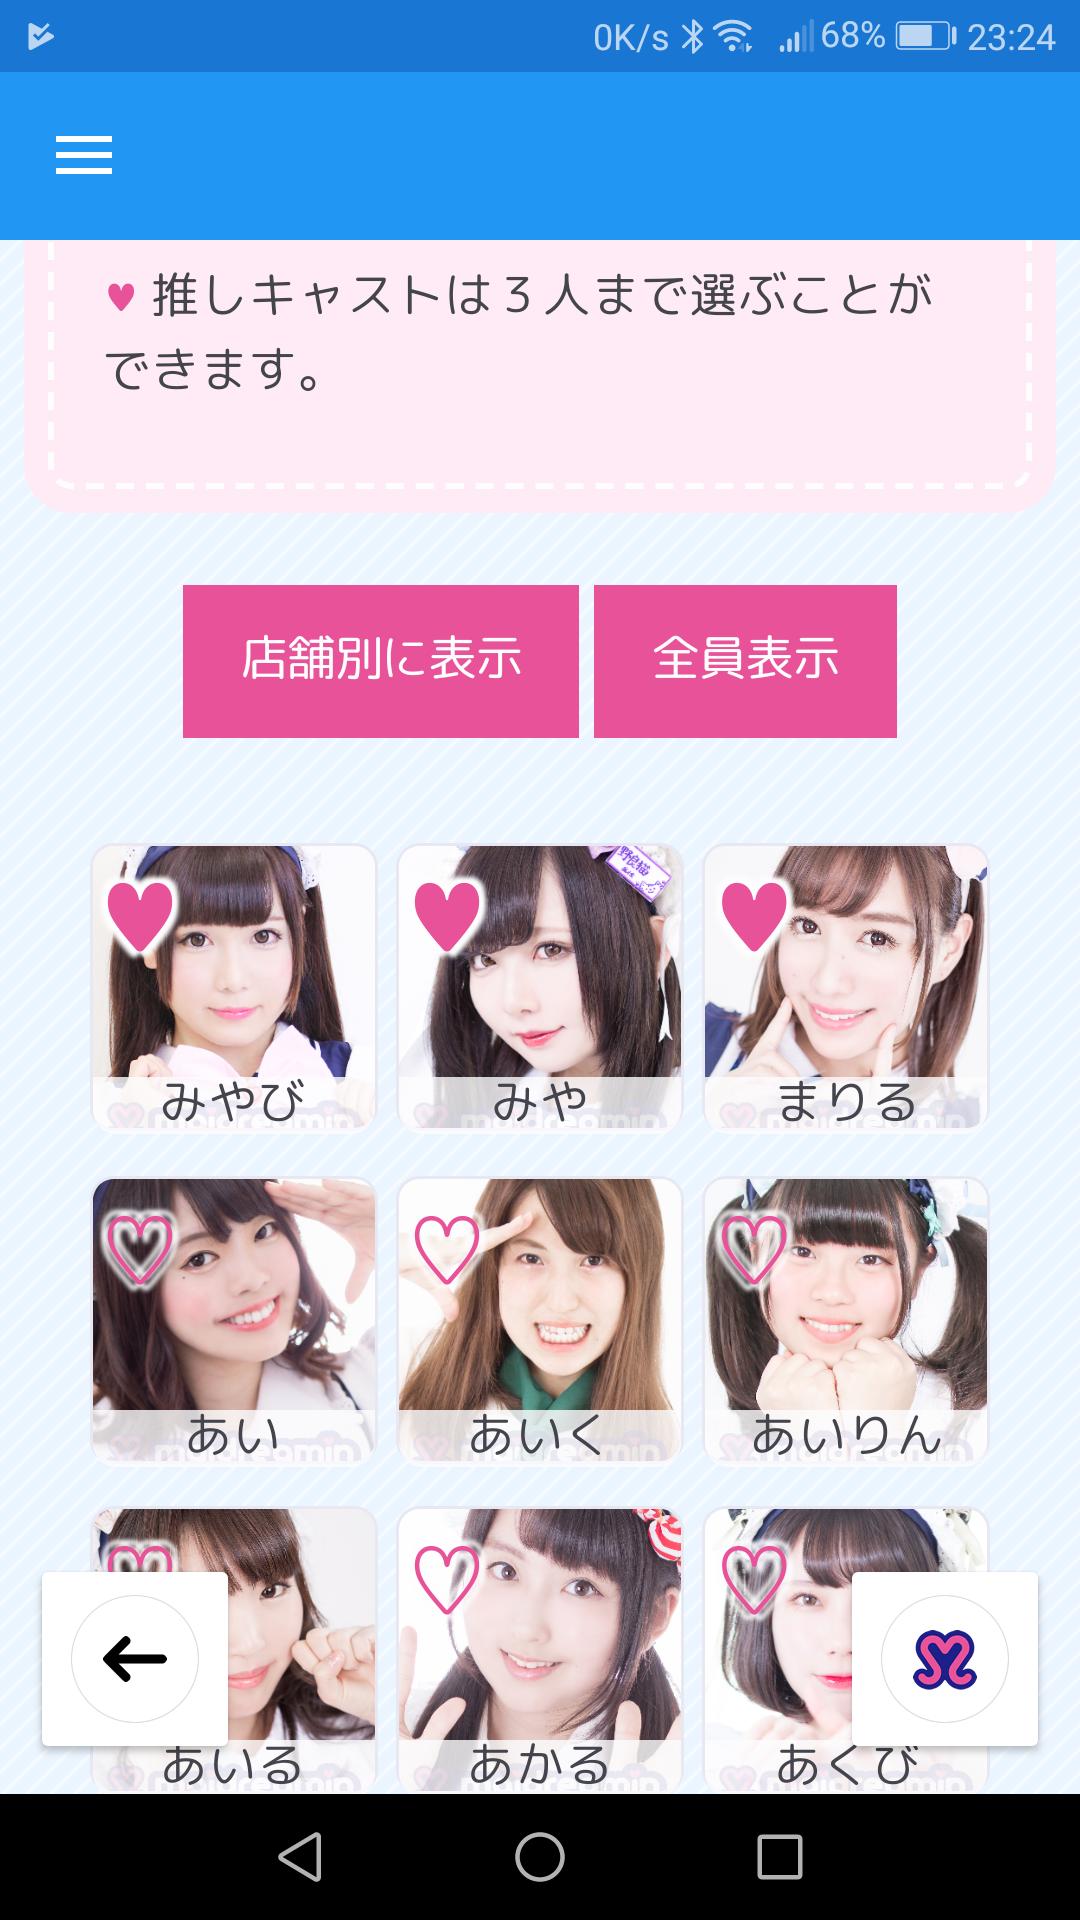 めいどりーみんアプリ For Android Apk Download